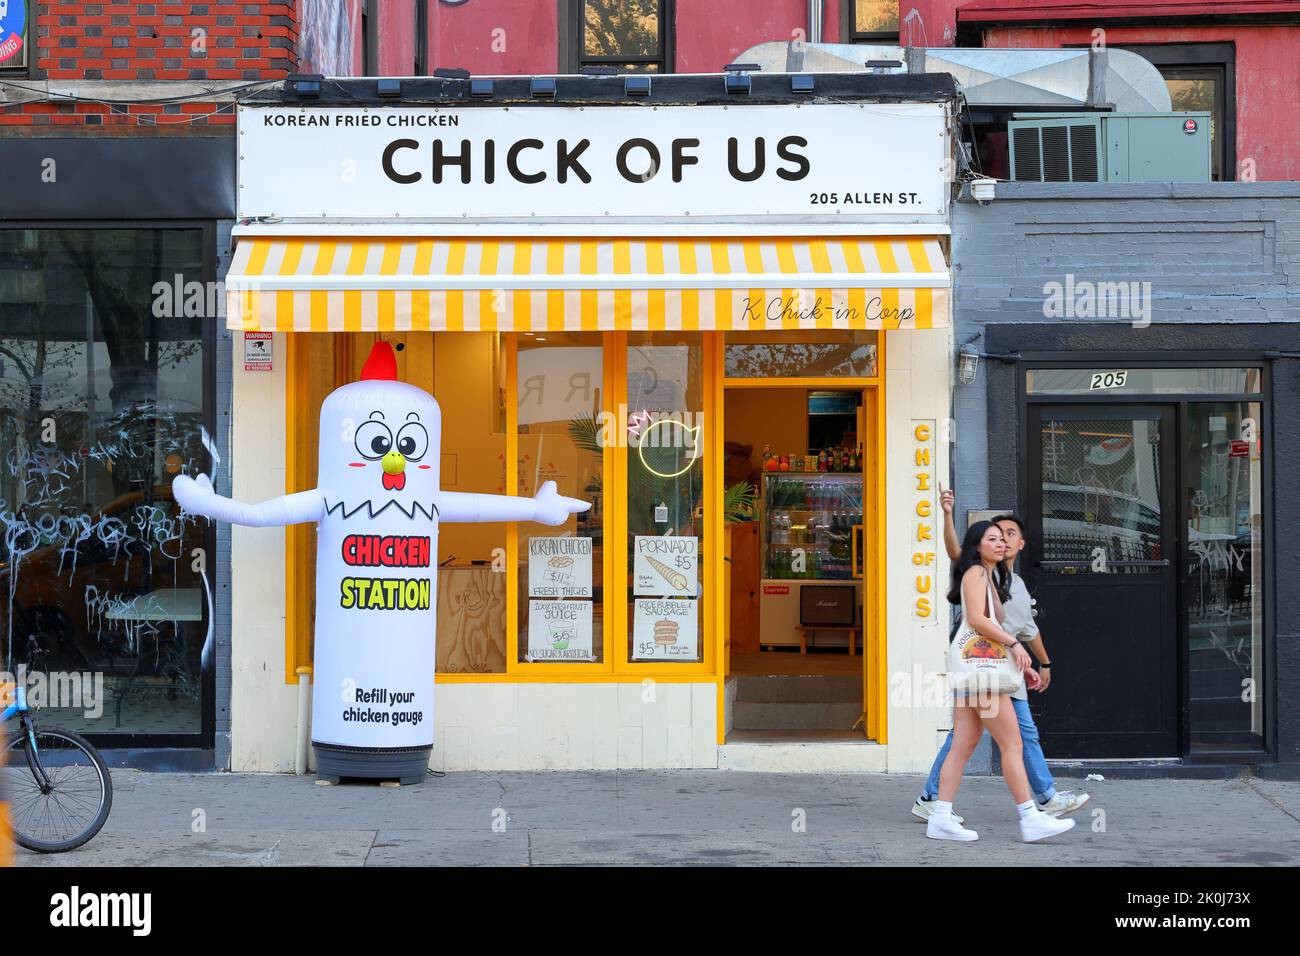 Chick of US, 205 Allen St, New York, New York, New York photo d'un restaurant de poulet frit coréen dans le Lower East Side de Manhattan. Banque D'Images